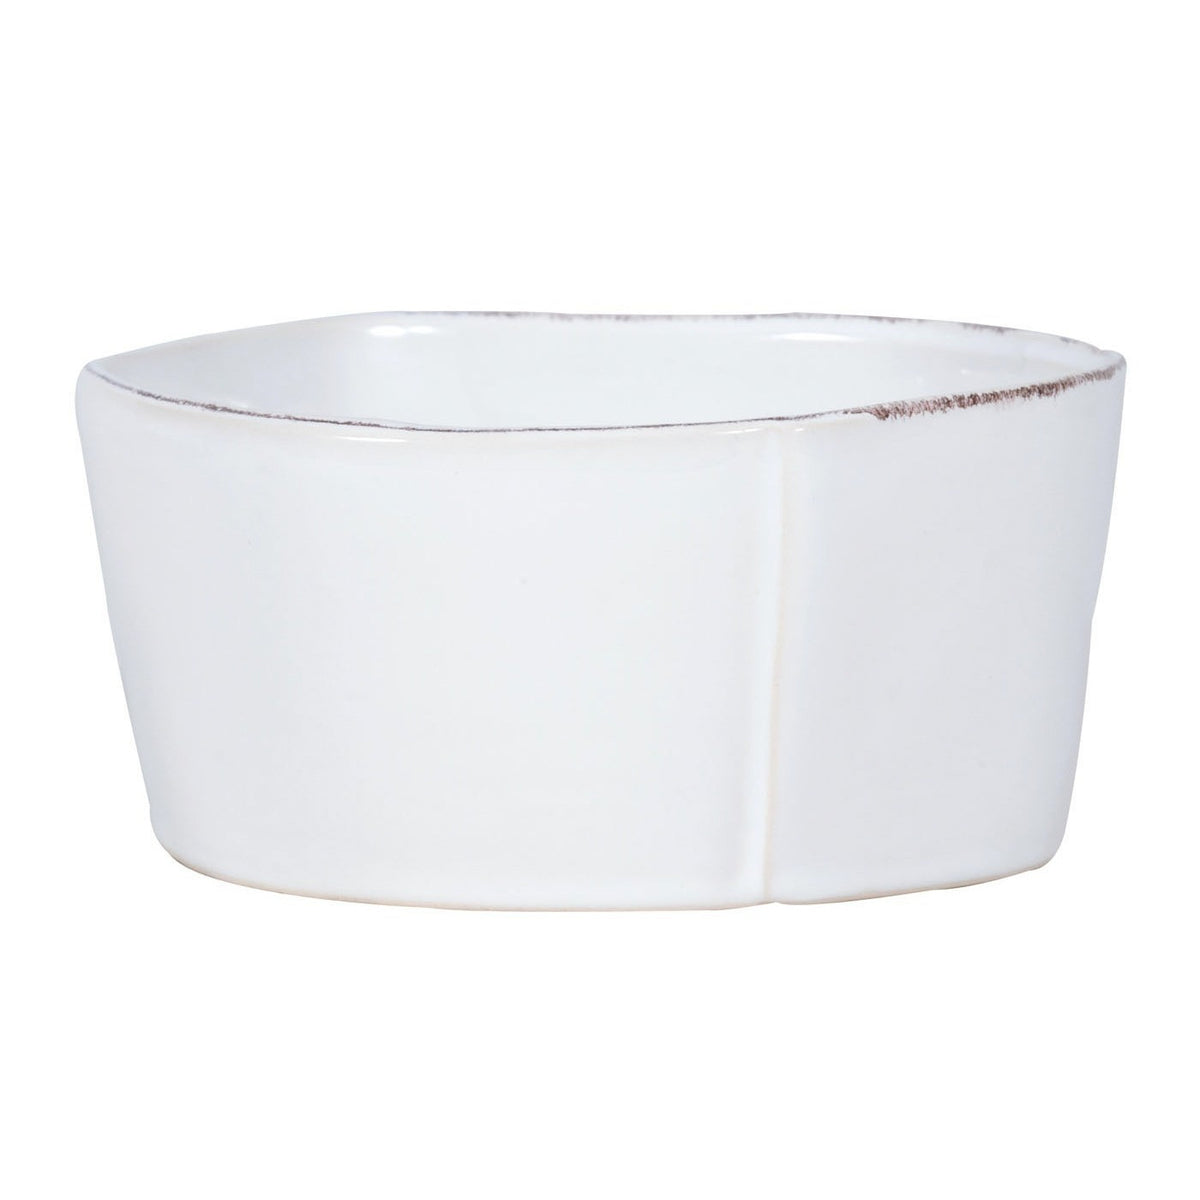 VIETRI: Lastra White Medium Serving Bowl - Artistica.com